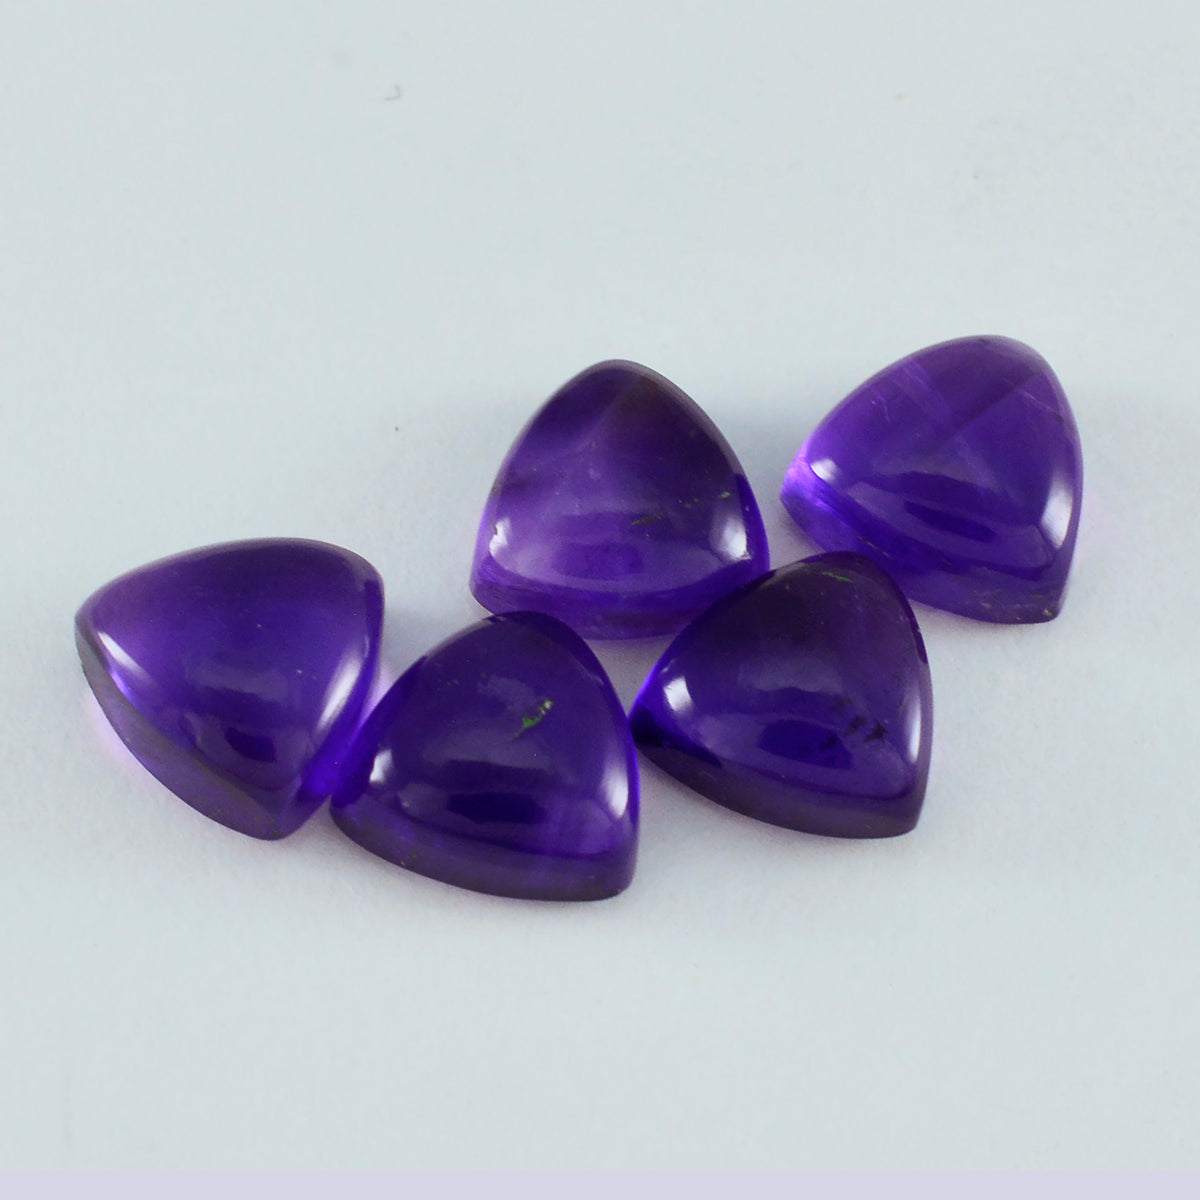 Riyogems 1pc cabochon d'améthyste violet 10x10mm forme trillion pierres précieuses de superbe qualité